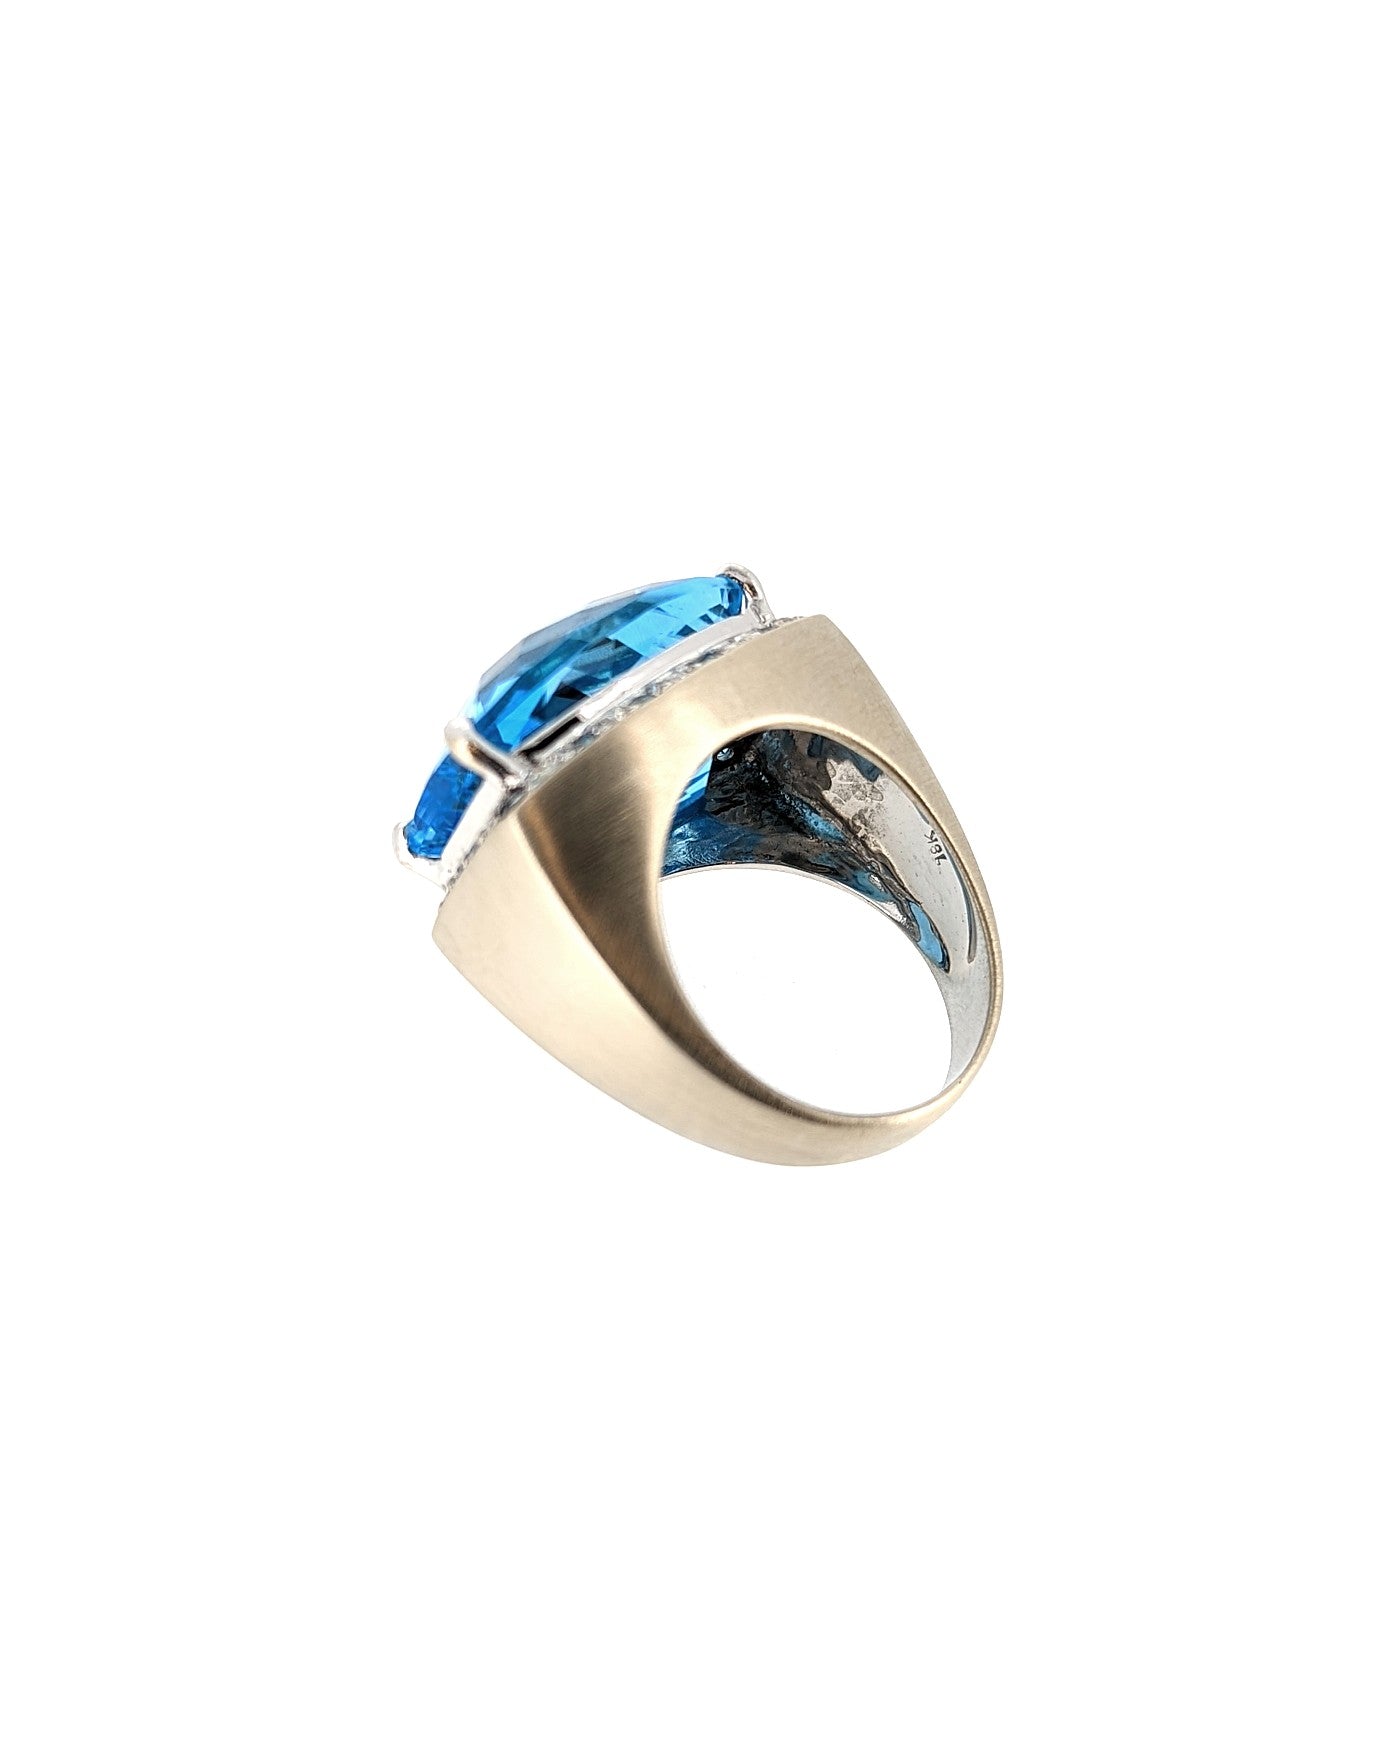 Large Blue Topaz Ring in 18K White Gold